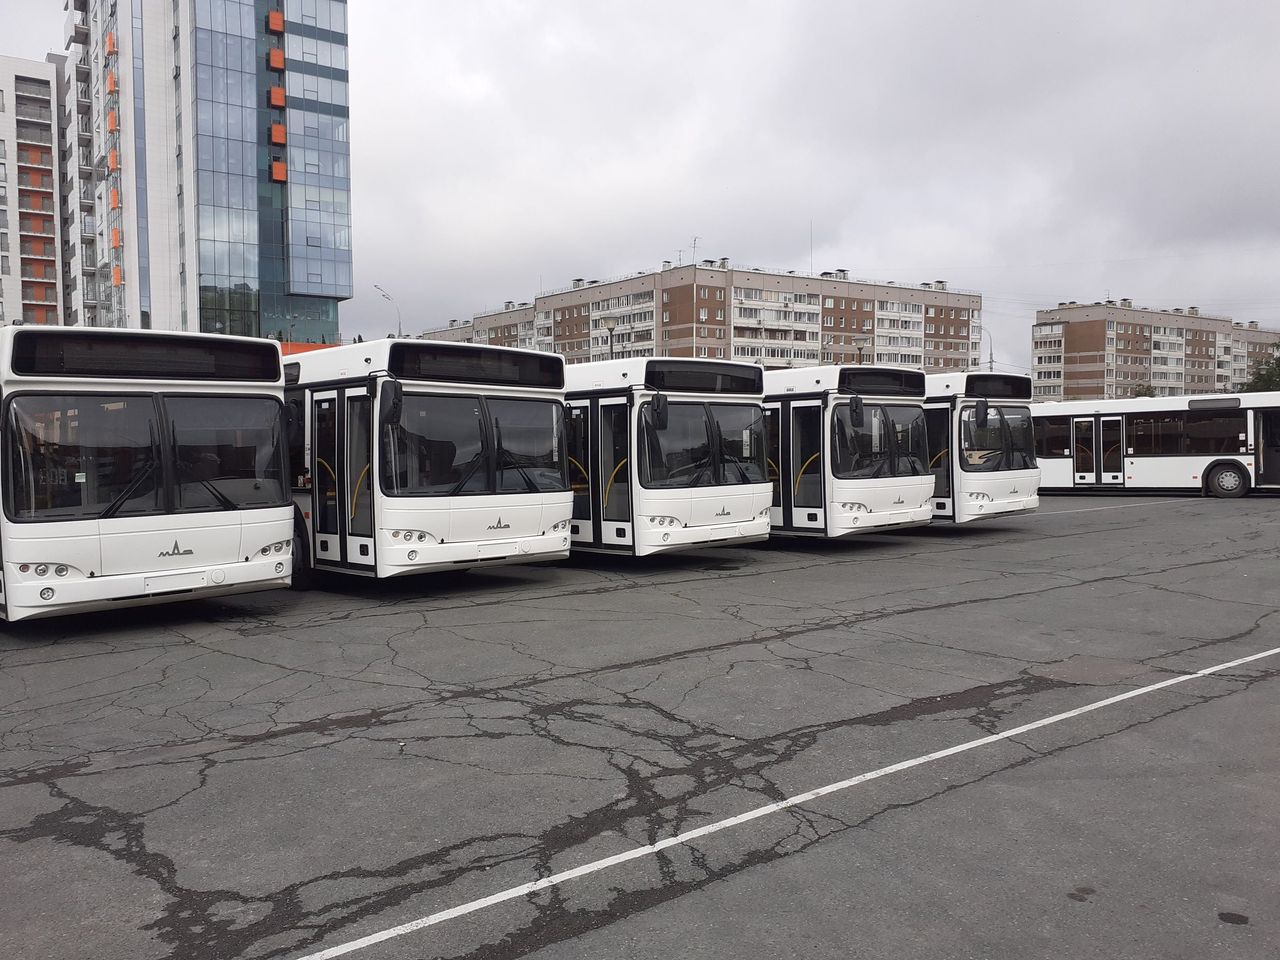 

Новые автобусы в Ижевске получат фирменную окраску

